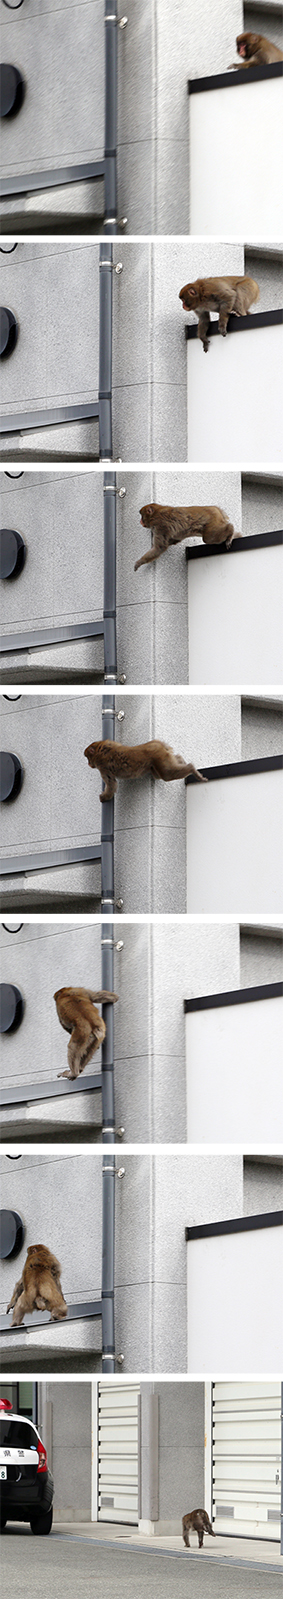 侵入した赤穂警察署の敷地から逃走する猿